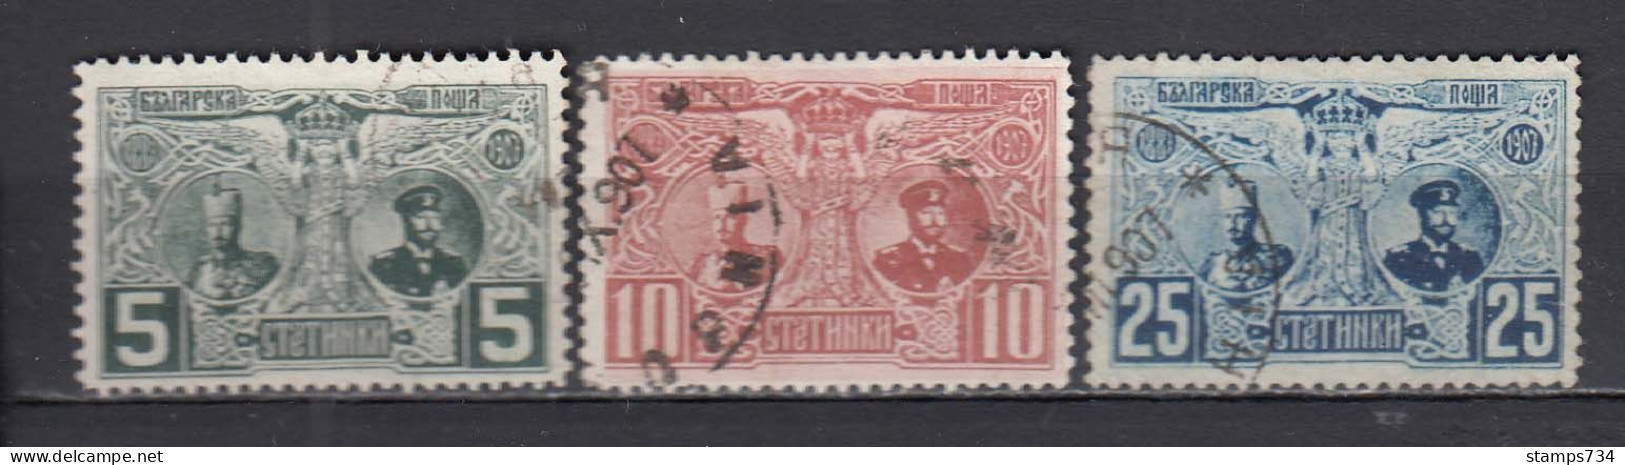 Bulgarie 1907 - 20 Ann. De Regne De Ferdinand I, YT 69-71, Obliteres - Used Stamps